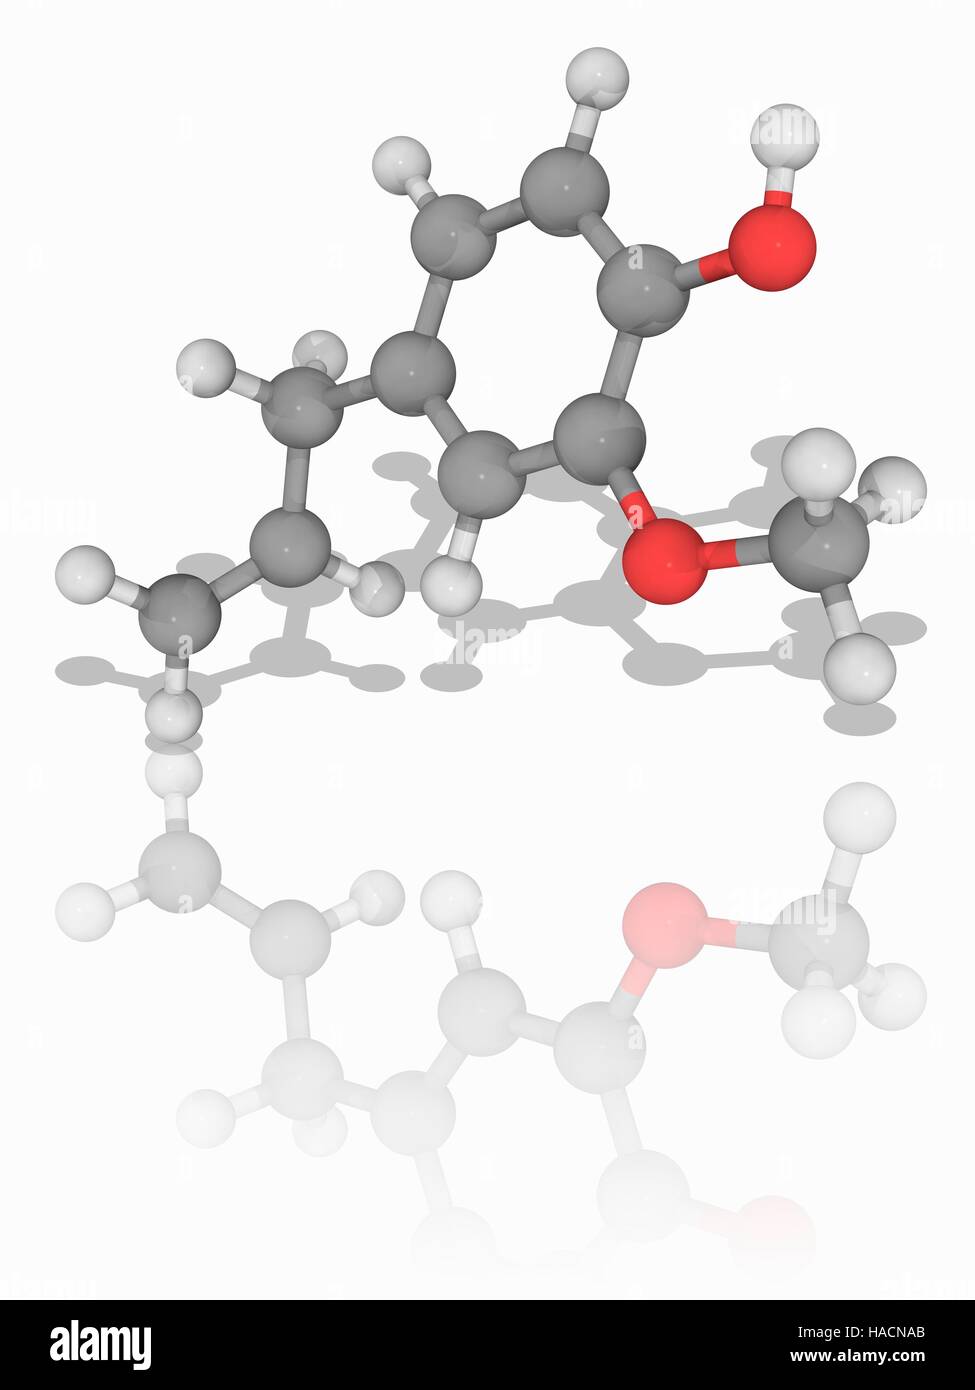 Eugenol. Molekulares Modell des Phenylpropene chemische Eugenol (C10. H12.  O2). Dies ist eine hellgelbe ölige Flüssigkeit entzogen werden bestimmte  ätherische Öle, vor allem aus Nelkenöl, Muskatnuss, Zimt, Basilikum und  Lorbeer. Es wird